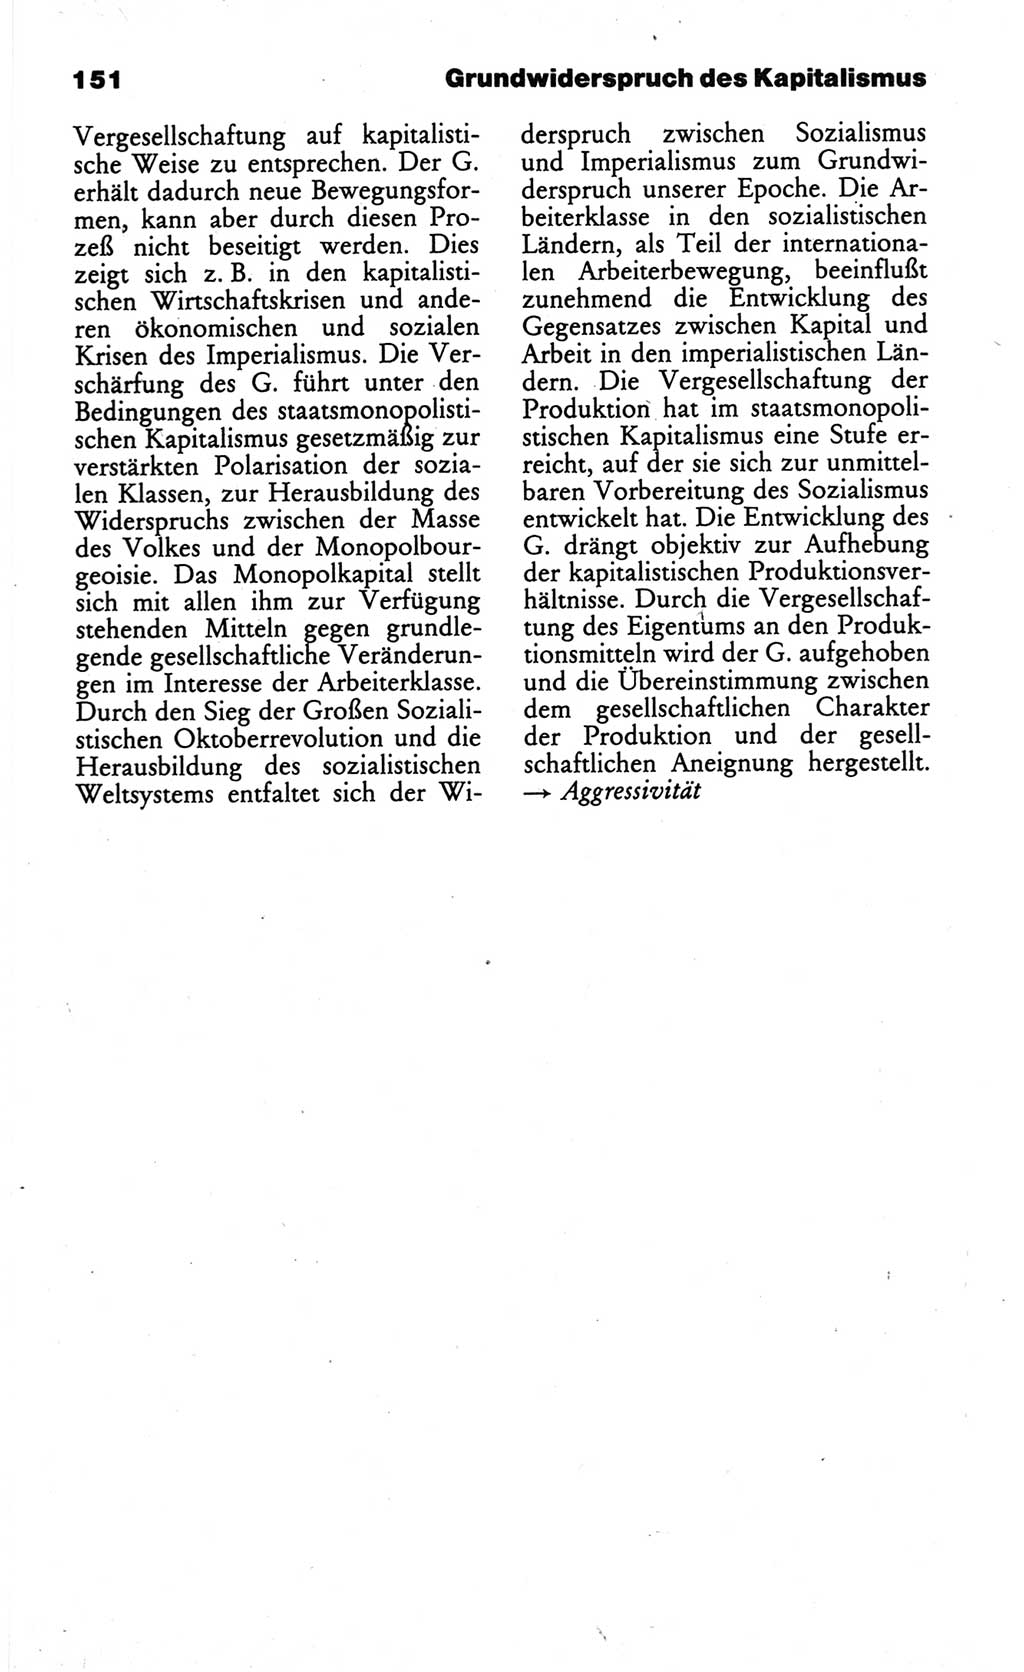 Wörterbuch des wissenschaftlichen Kommunismus [Deutsche Demokratische Republik (DDR)] 1984, Seite 151 (Wb. wiss. Komm. DDR 1984, S. 151)